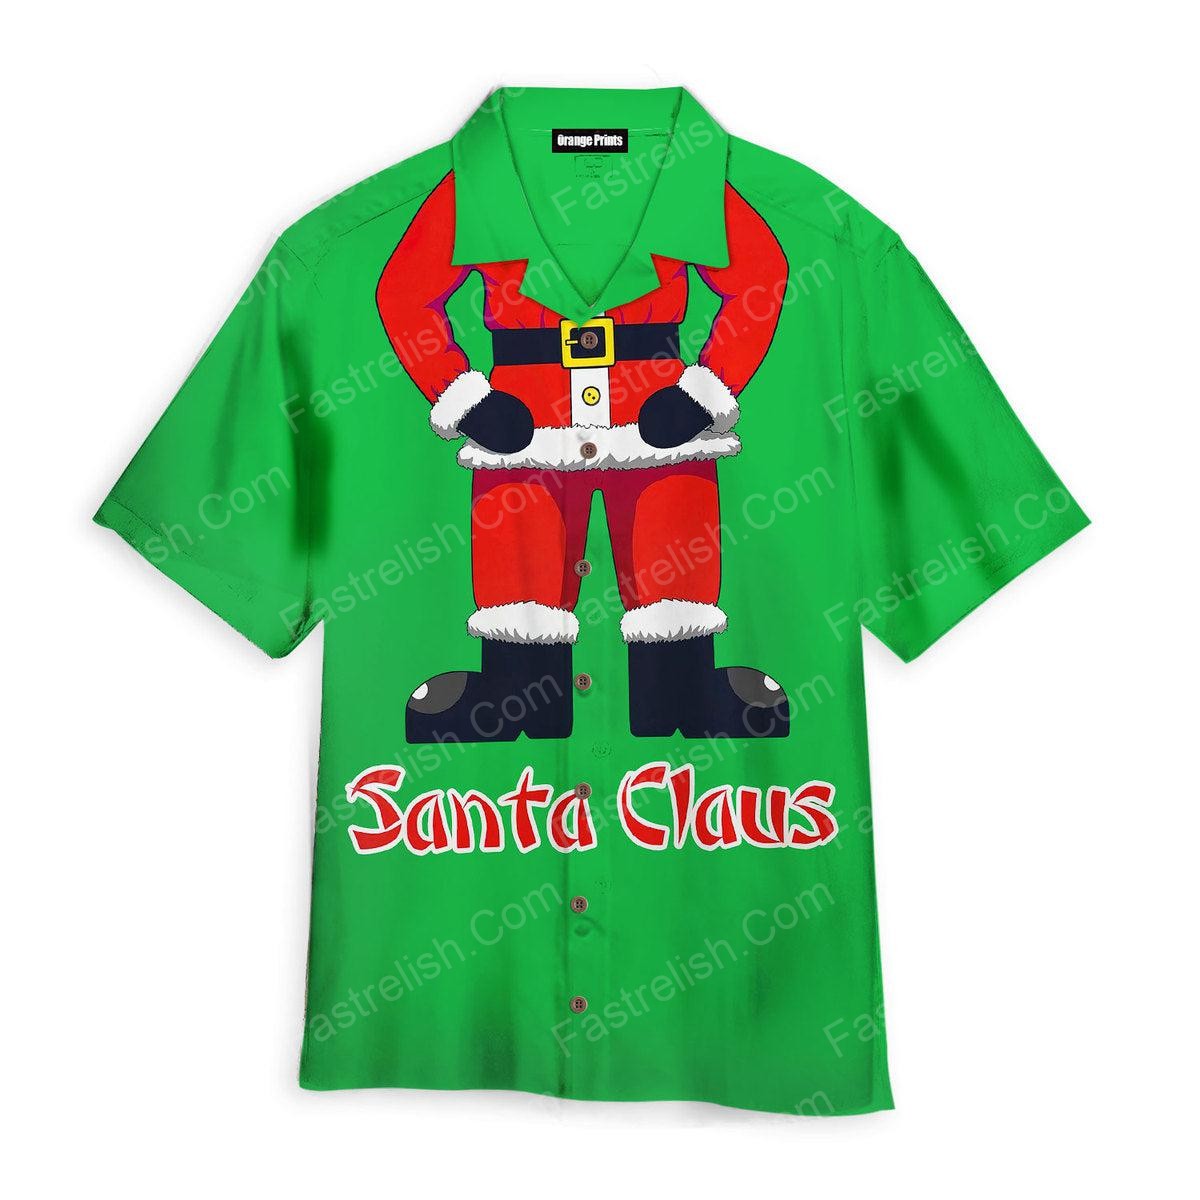 Santa Claus Hawaiian Shirts WT6991